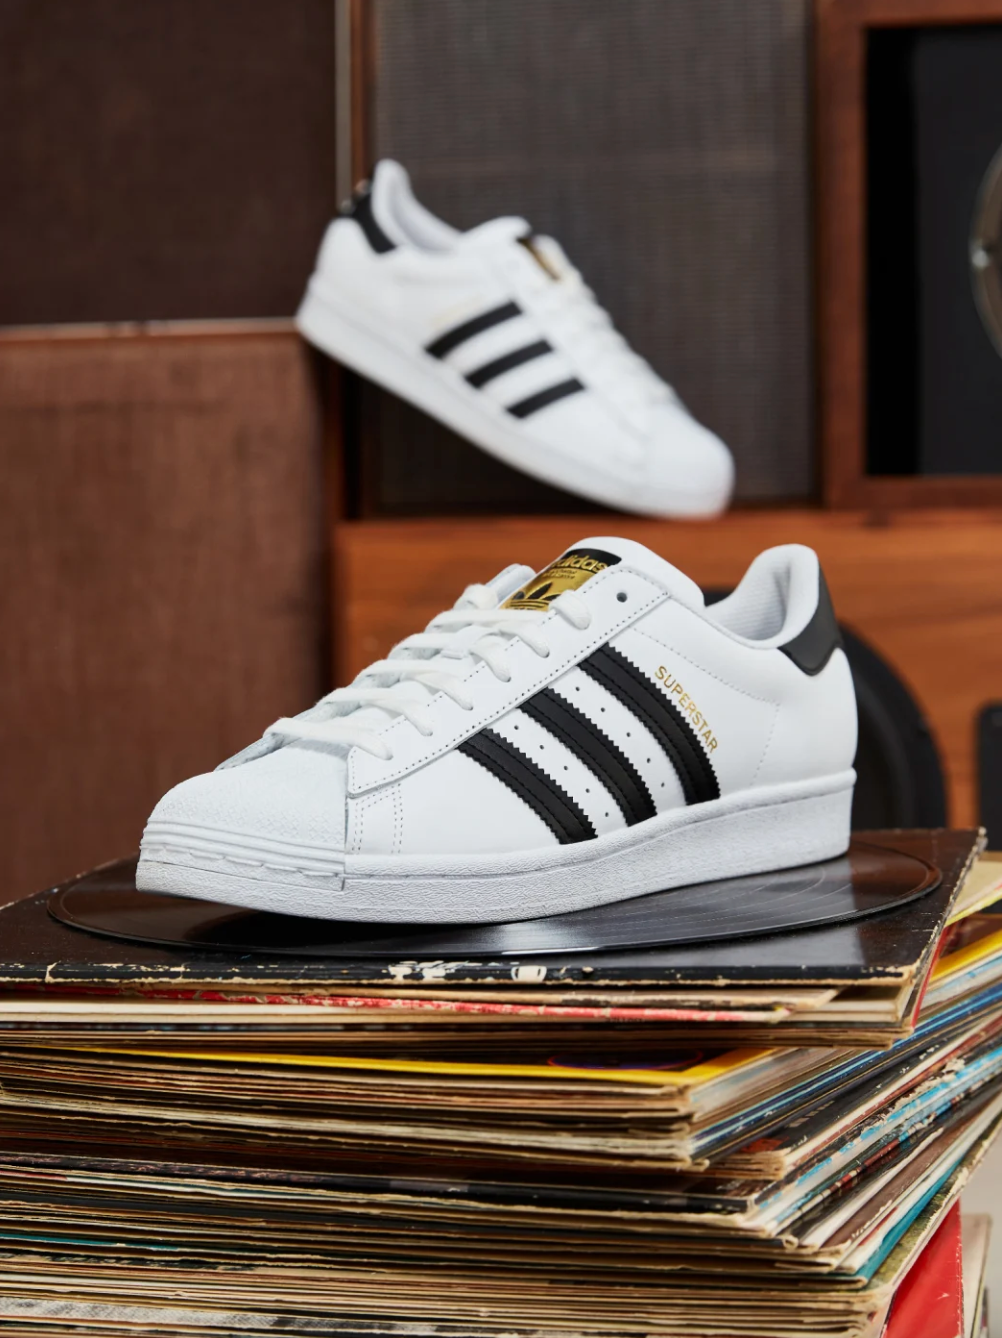 Adidas Originals Superstar Shoes - Sam's Club